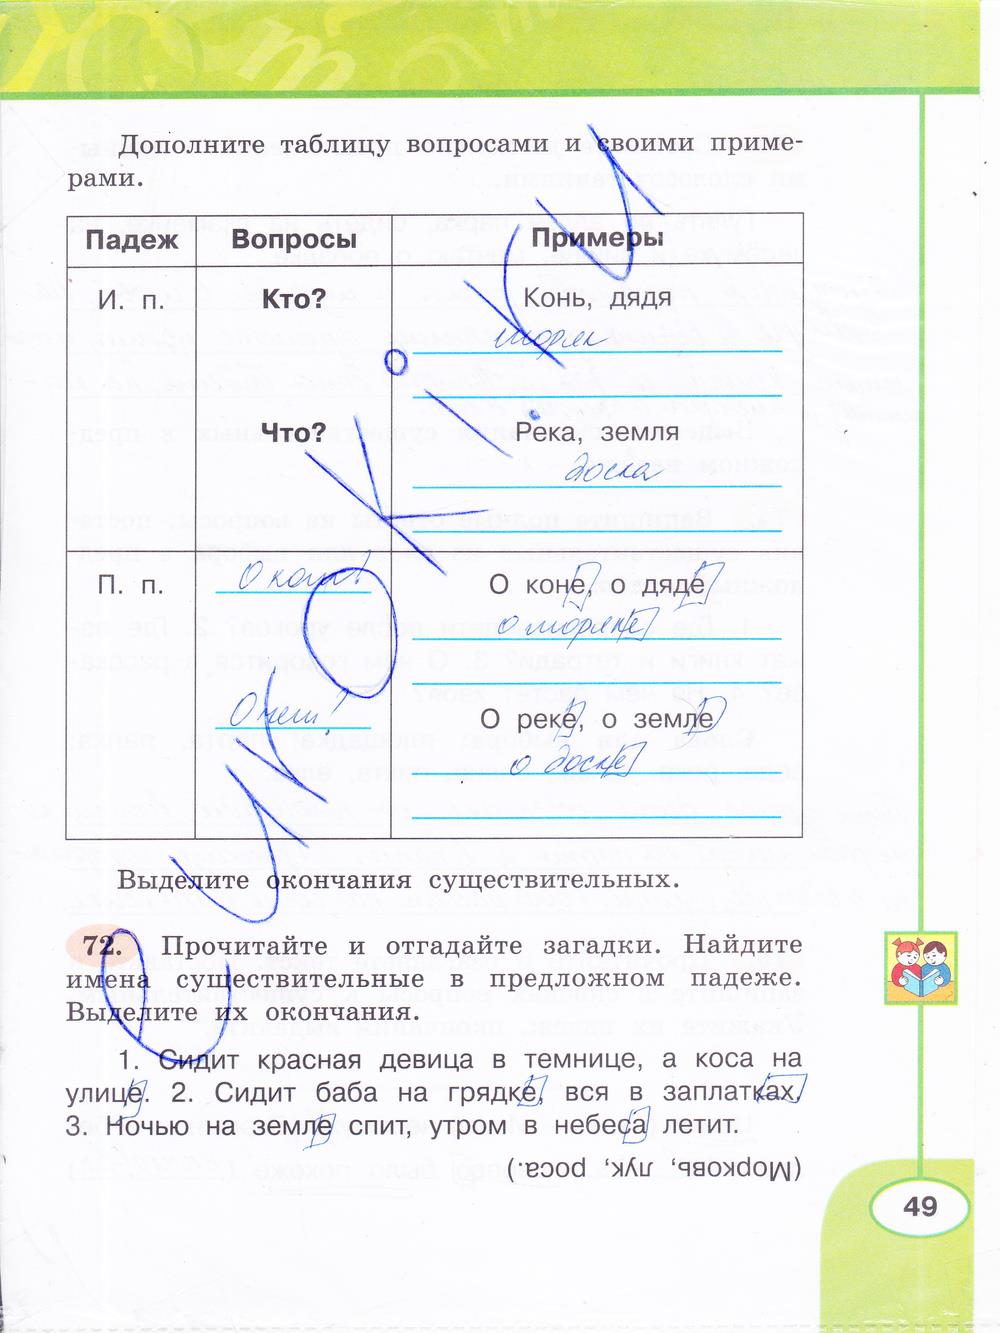 гдз 3 класс рабочая тетрадь часть 2 страница 49 русский язык Климанова, Бабушкина